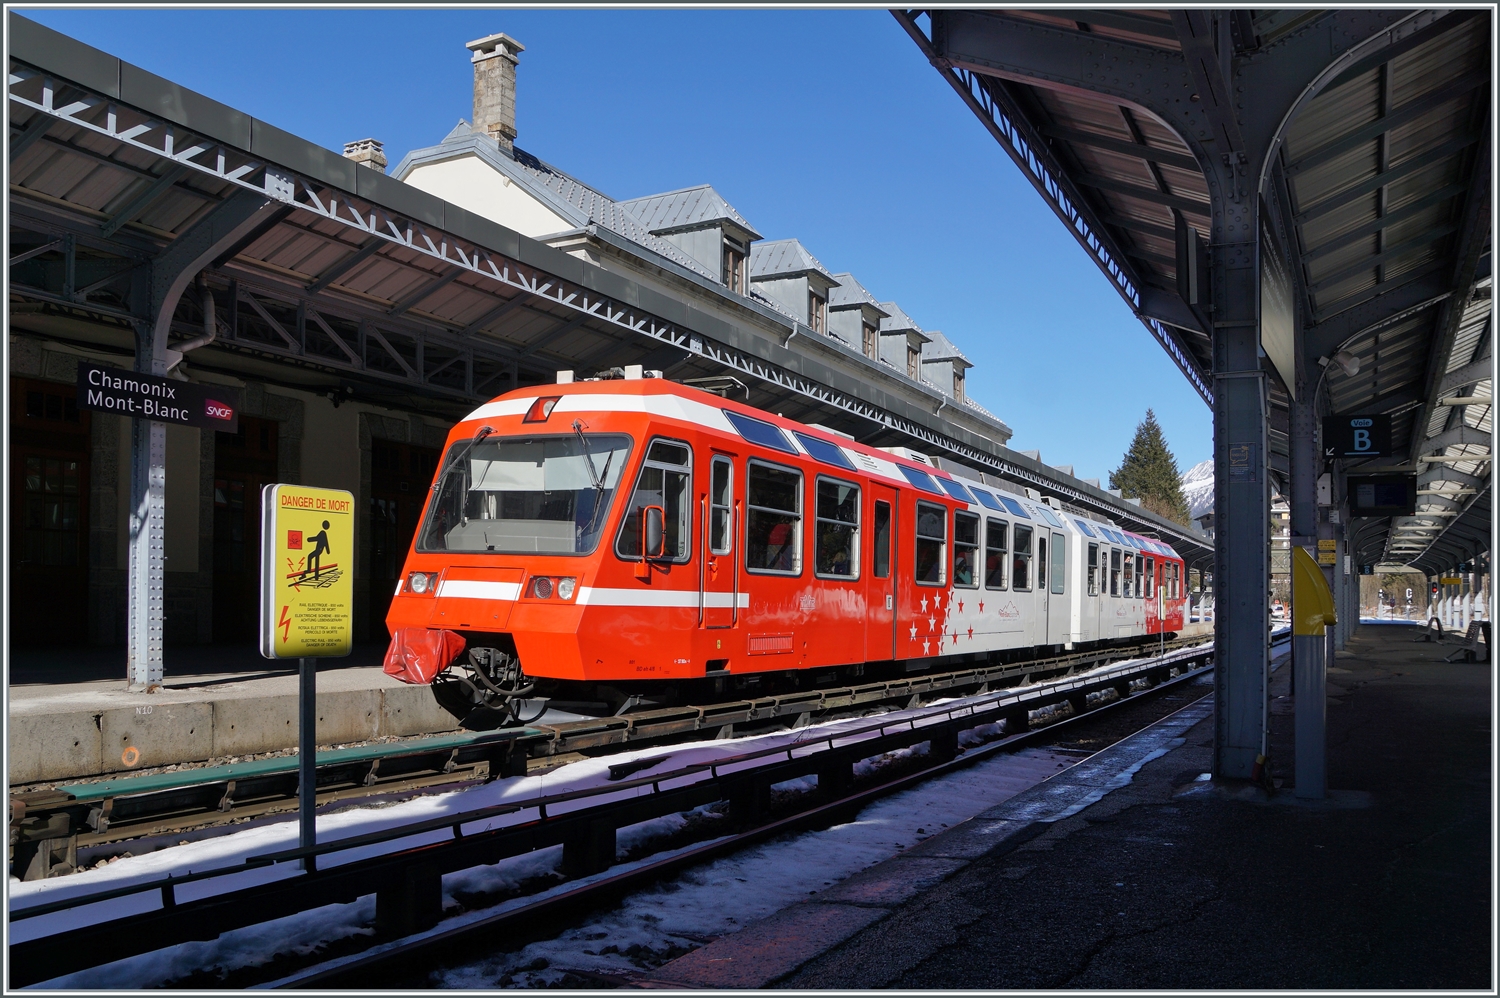 Der Stand der Winter Sonne und somit die Schatten sowie der Bahnsteig machten es überraschend schwierig, den SNCF Z 800 in Chamonix ansprechend zu fotografieren, somit versuchte ich verschiedene Varianten und zeige hier zwei davon. Die erste mit recht viel Zug, die zweite bewusst mit dem  störenden  Bahnsteig, aber auch mit entsprechenden Details. 

14. Feb. 2023